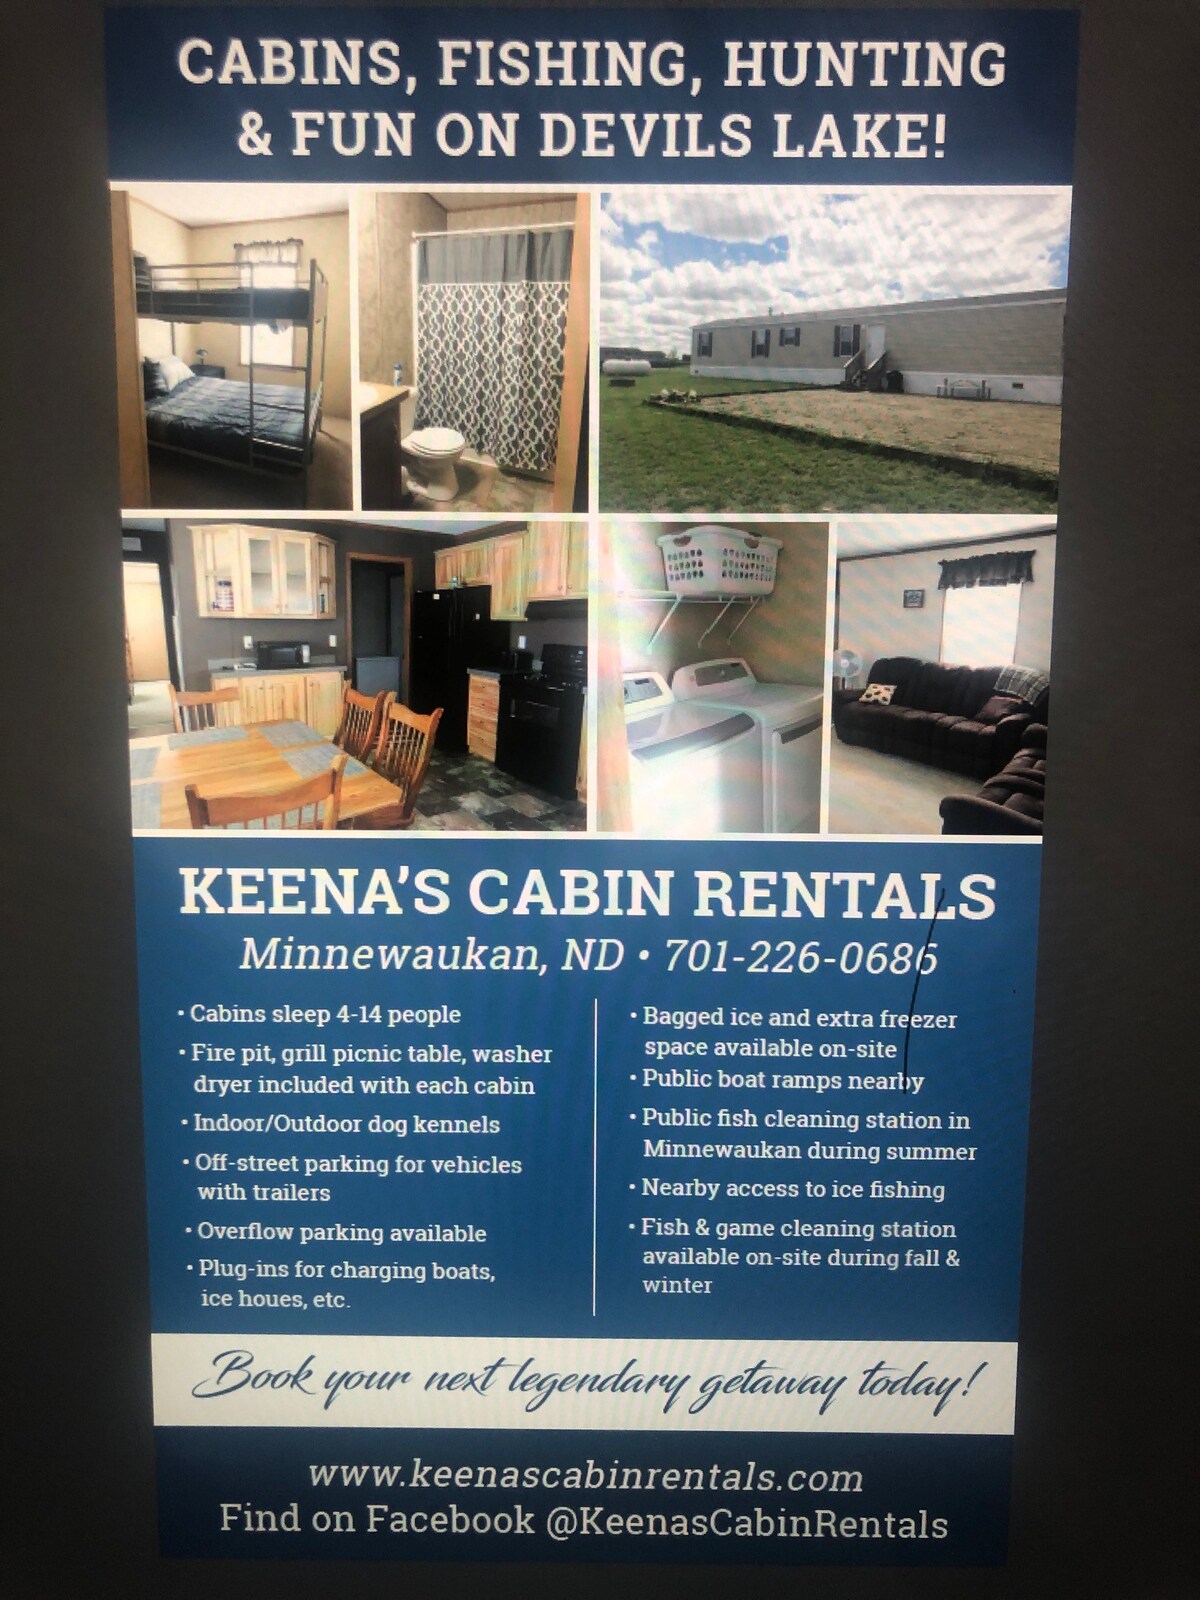 Keena's Cabin Rentals 4 bedroom 2 bath